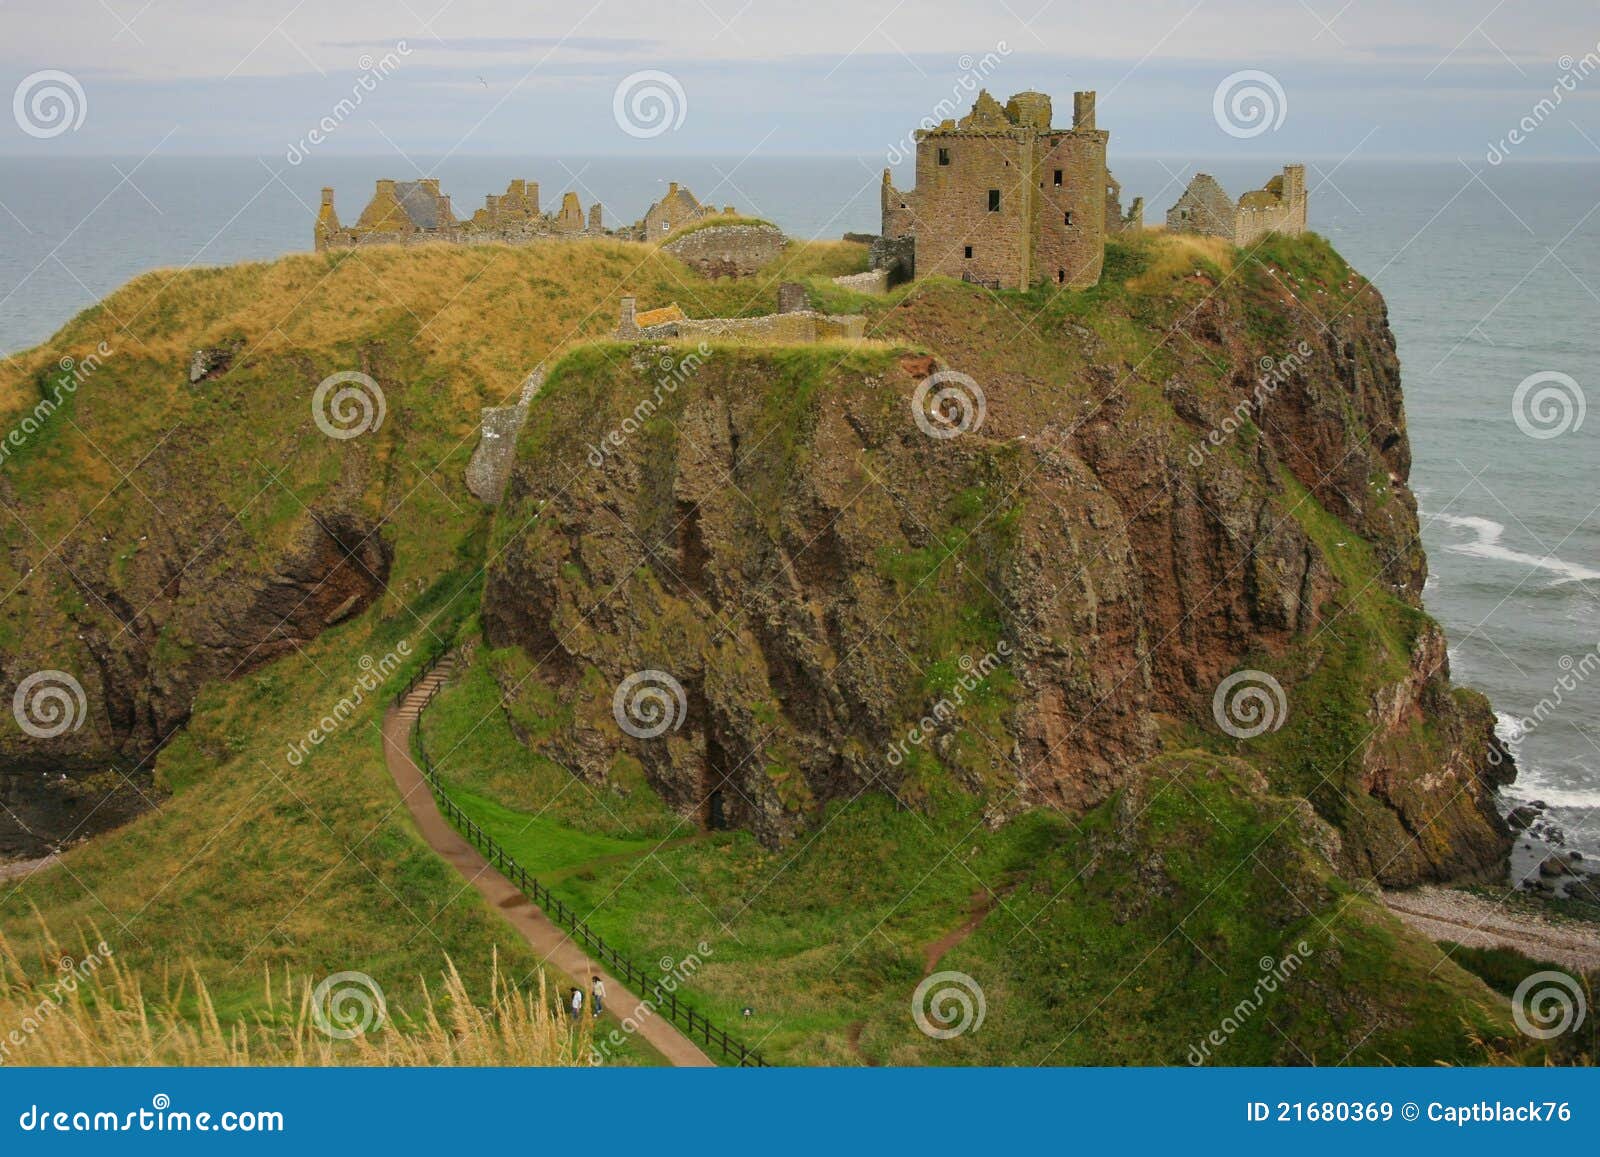 dunnotar castle , scotland